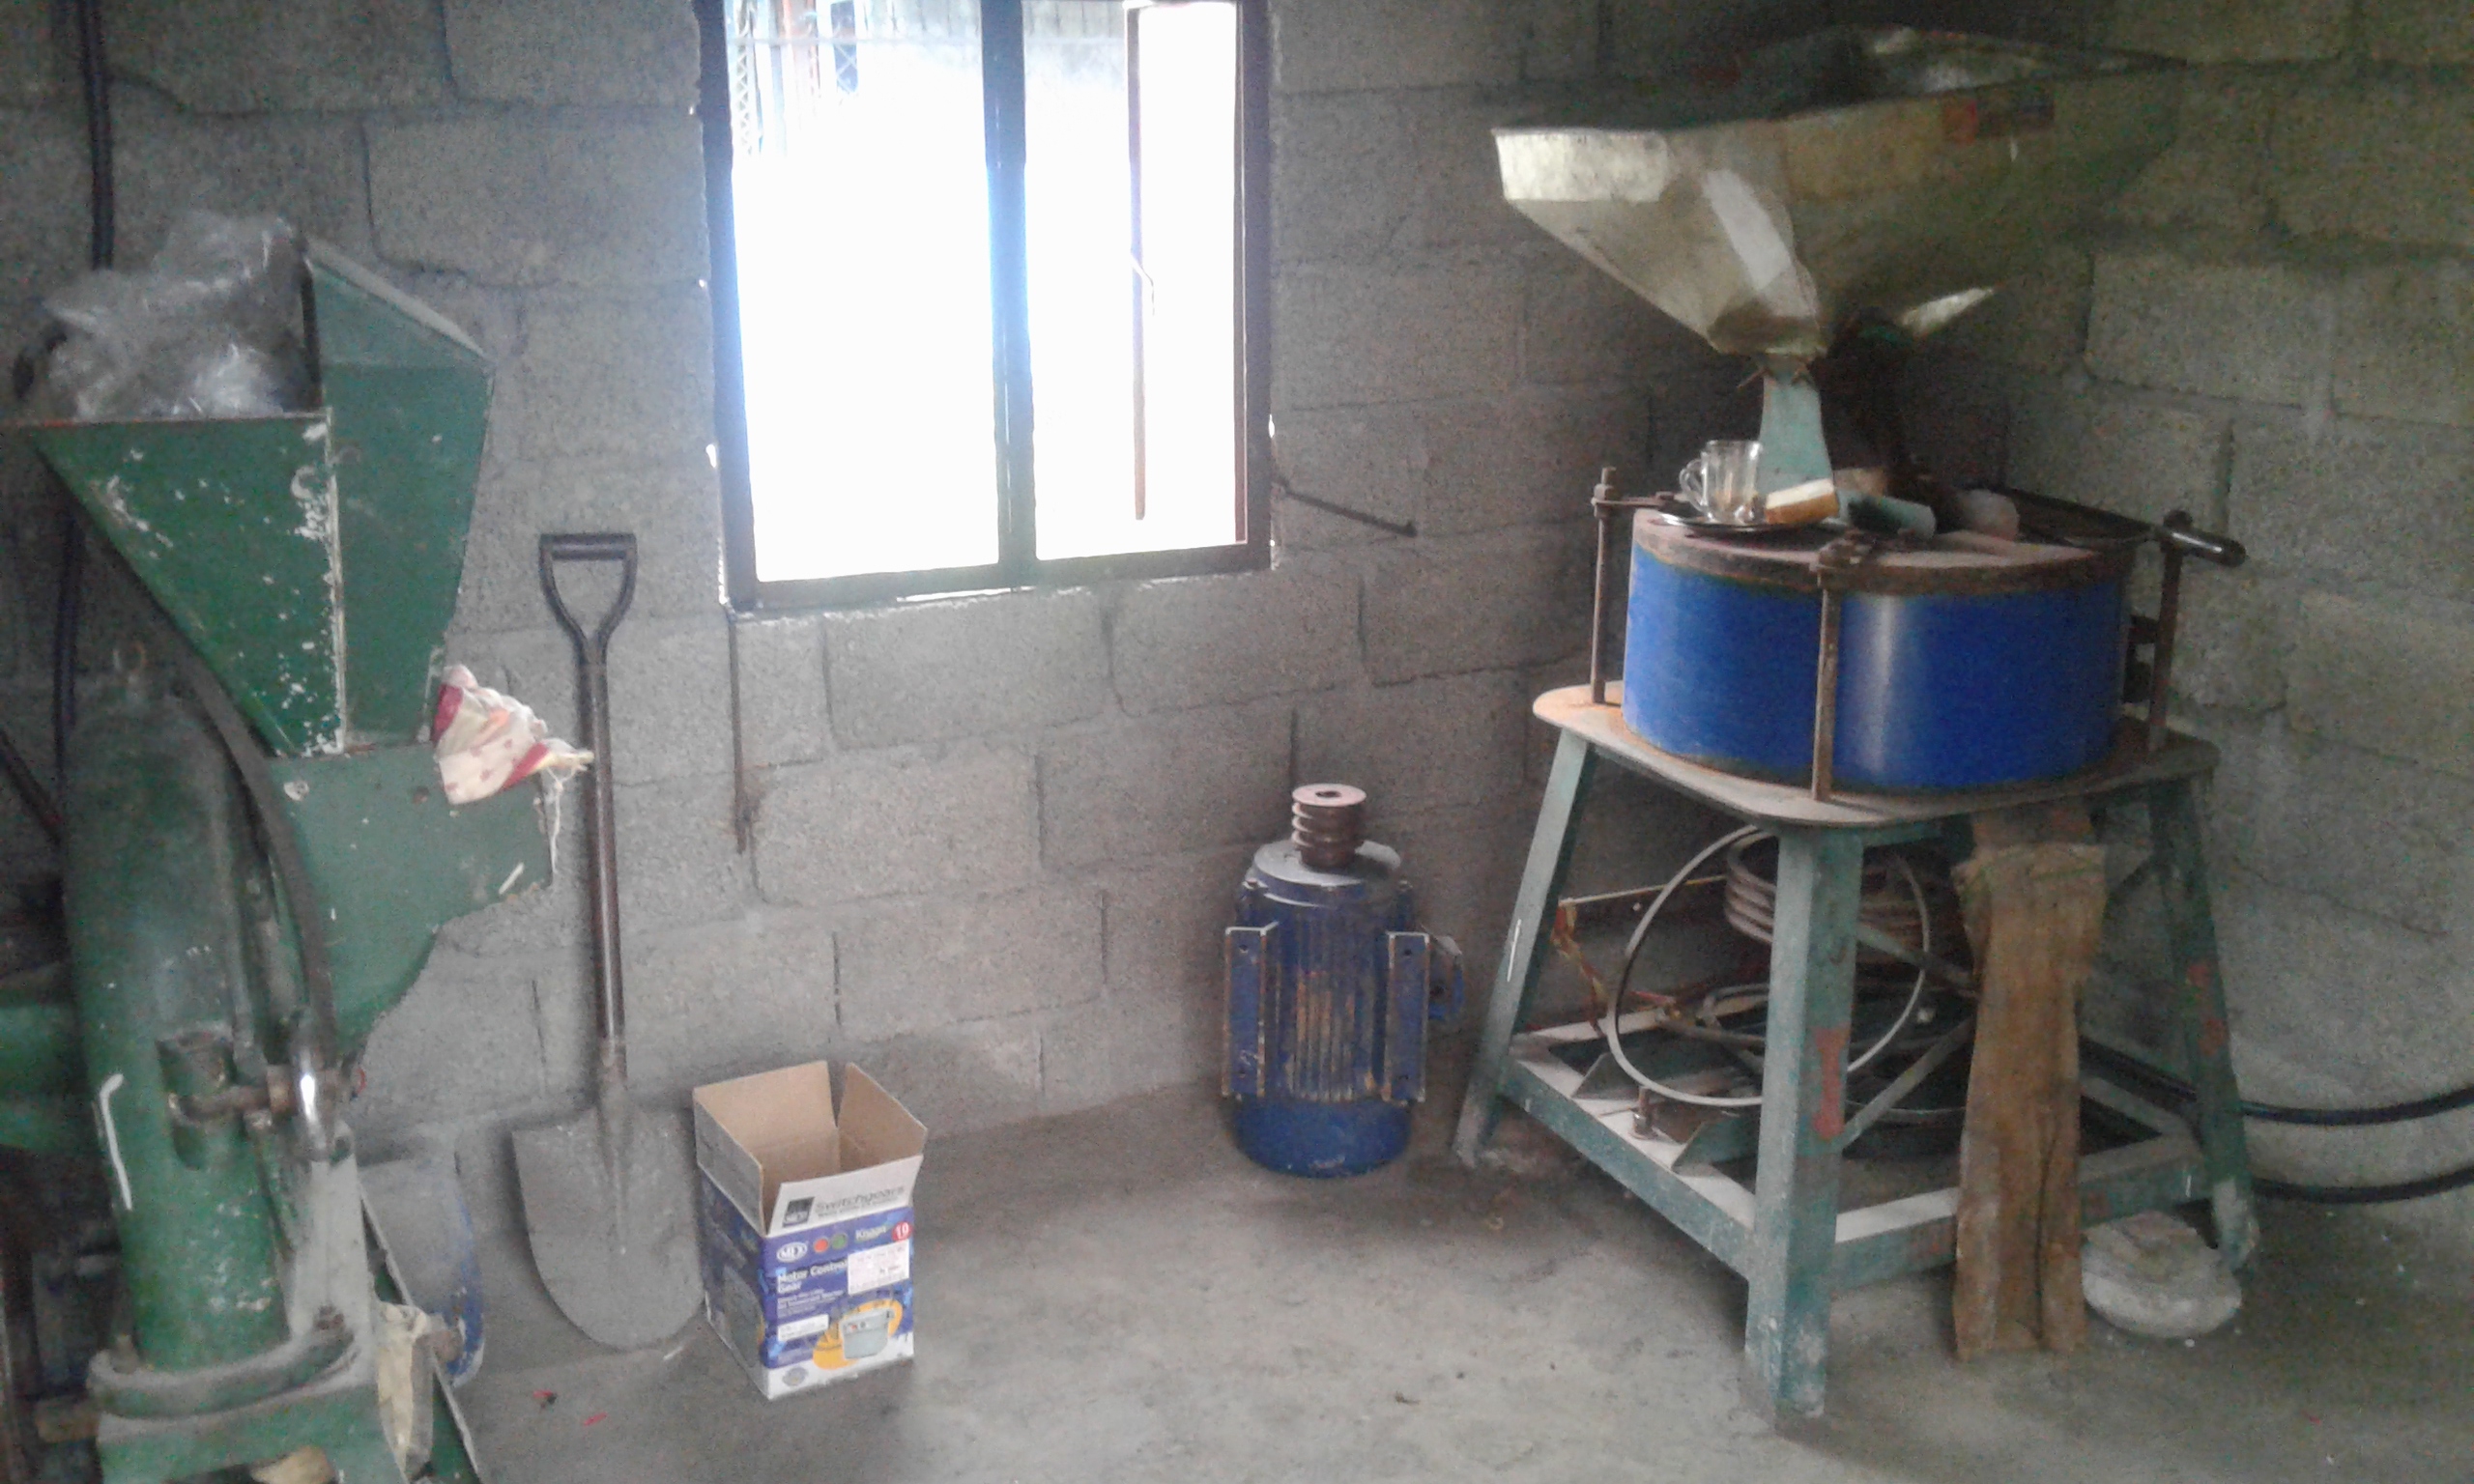 New masala Mill Setup at Lekhnath